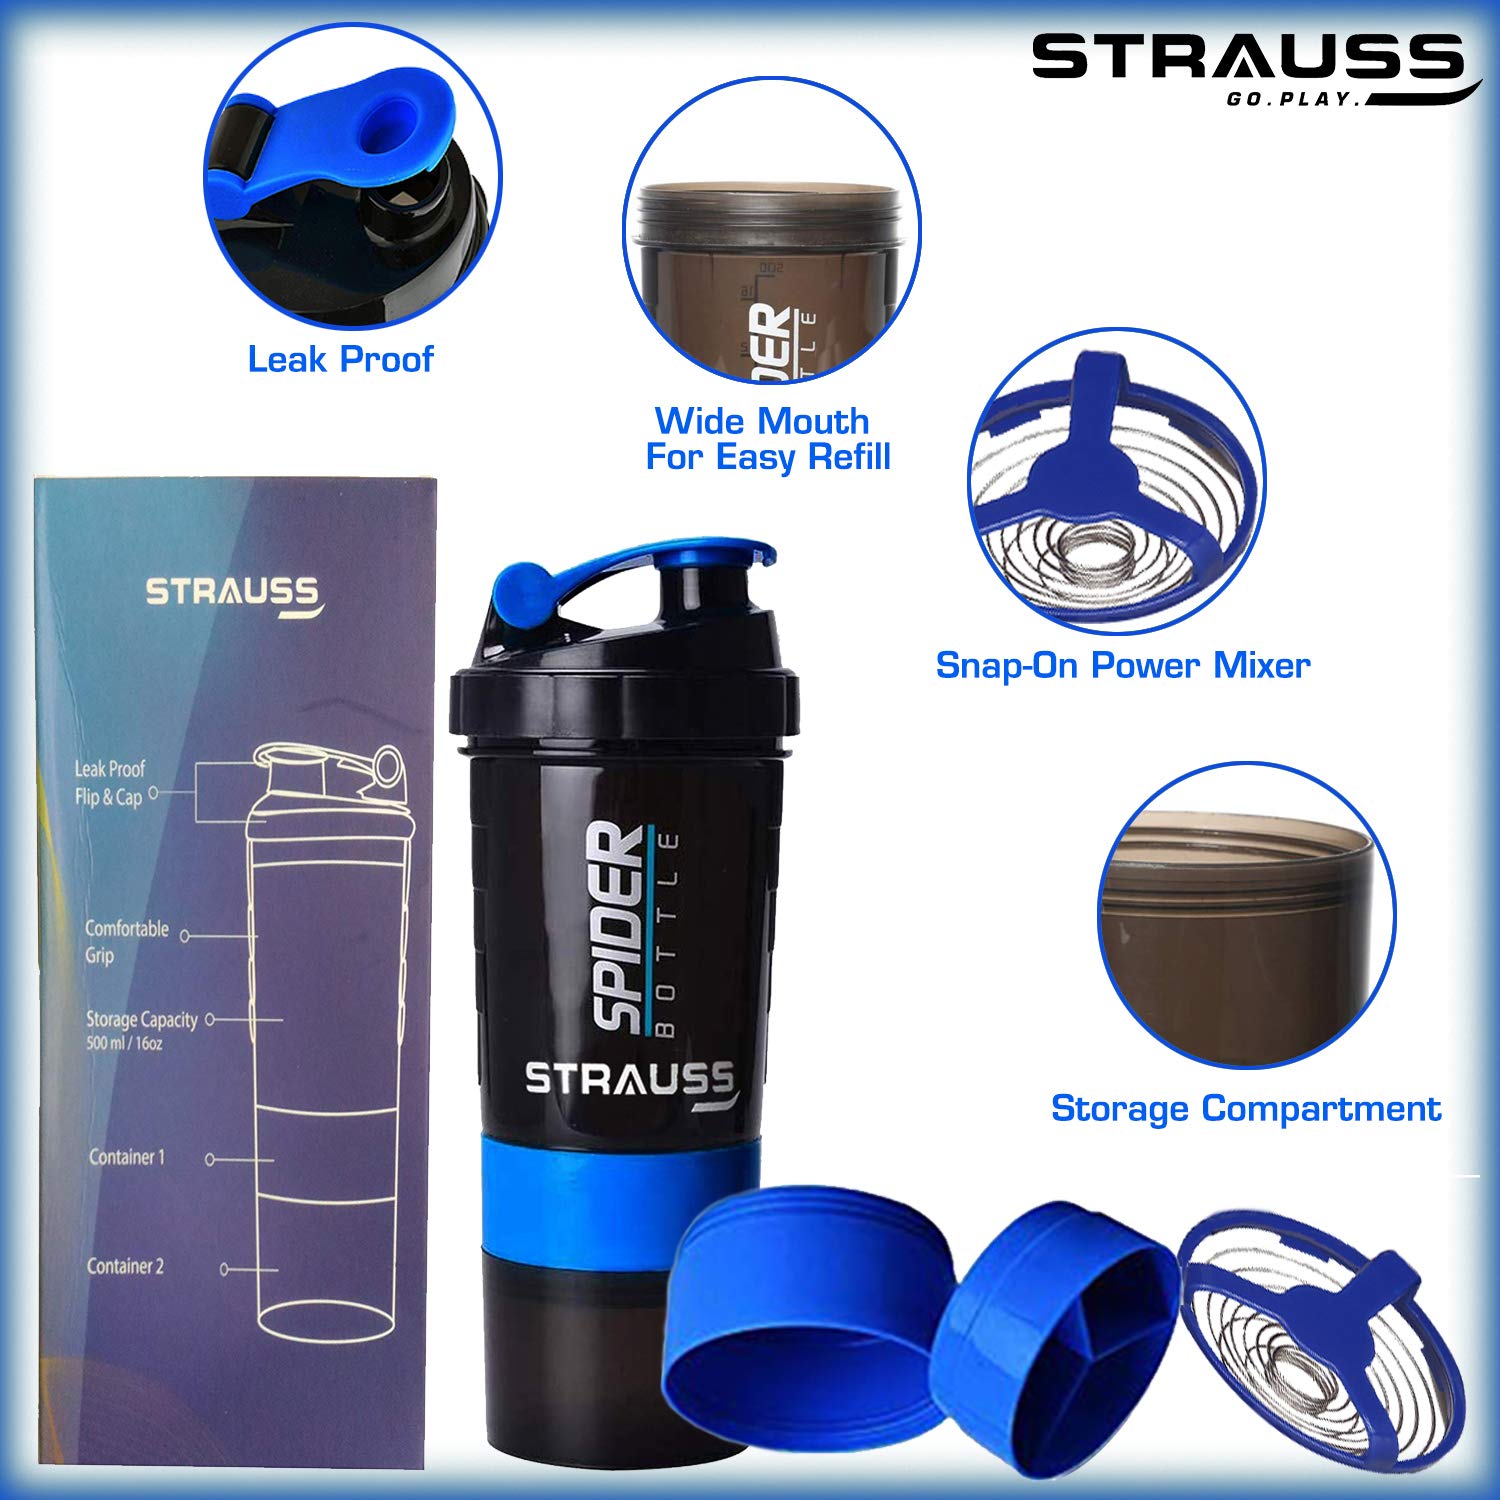 STRAUSS Spider Shaker Bottle 500 ml, (Blue)